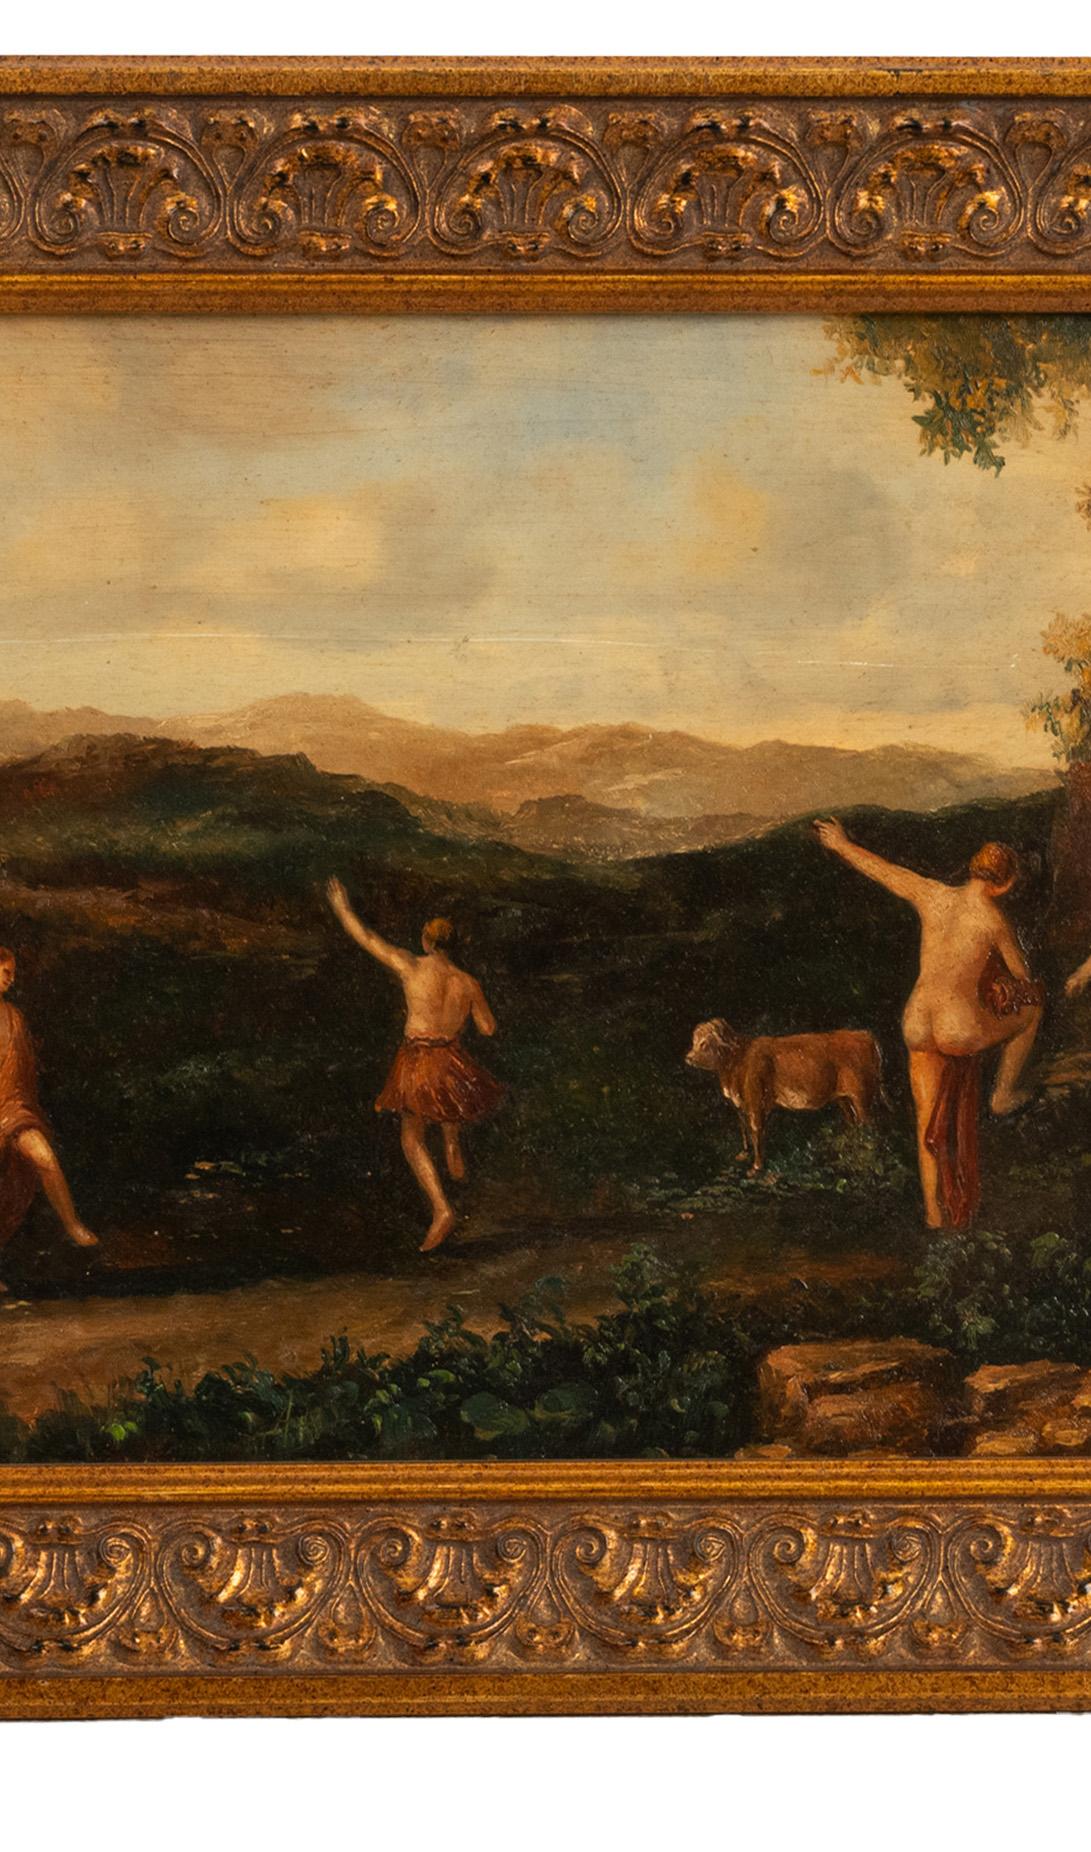 Une bonne peinture ancienne hollandaise/flamande à l'huile sur panneau, d'après Cornelis van Poelenburgh, vers 1850.
Le tableau représente un certain nombre de nymphes nues et partiellement vêtues qui dansent dans un paysage bucolique, avec une